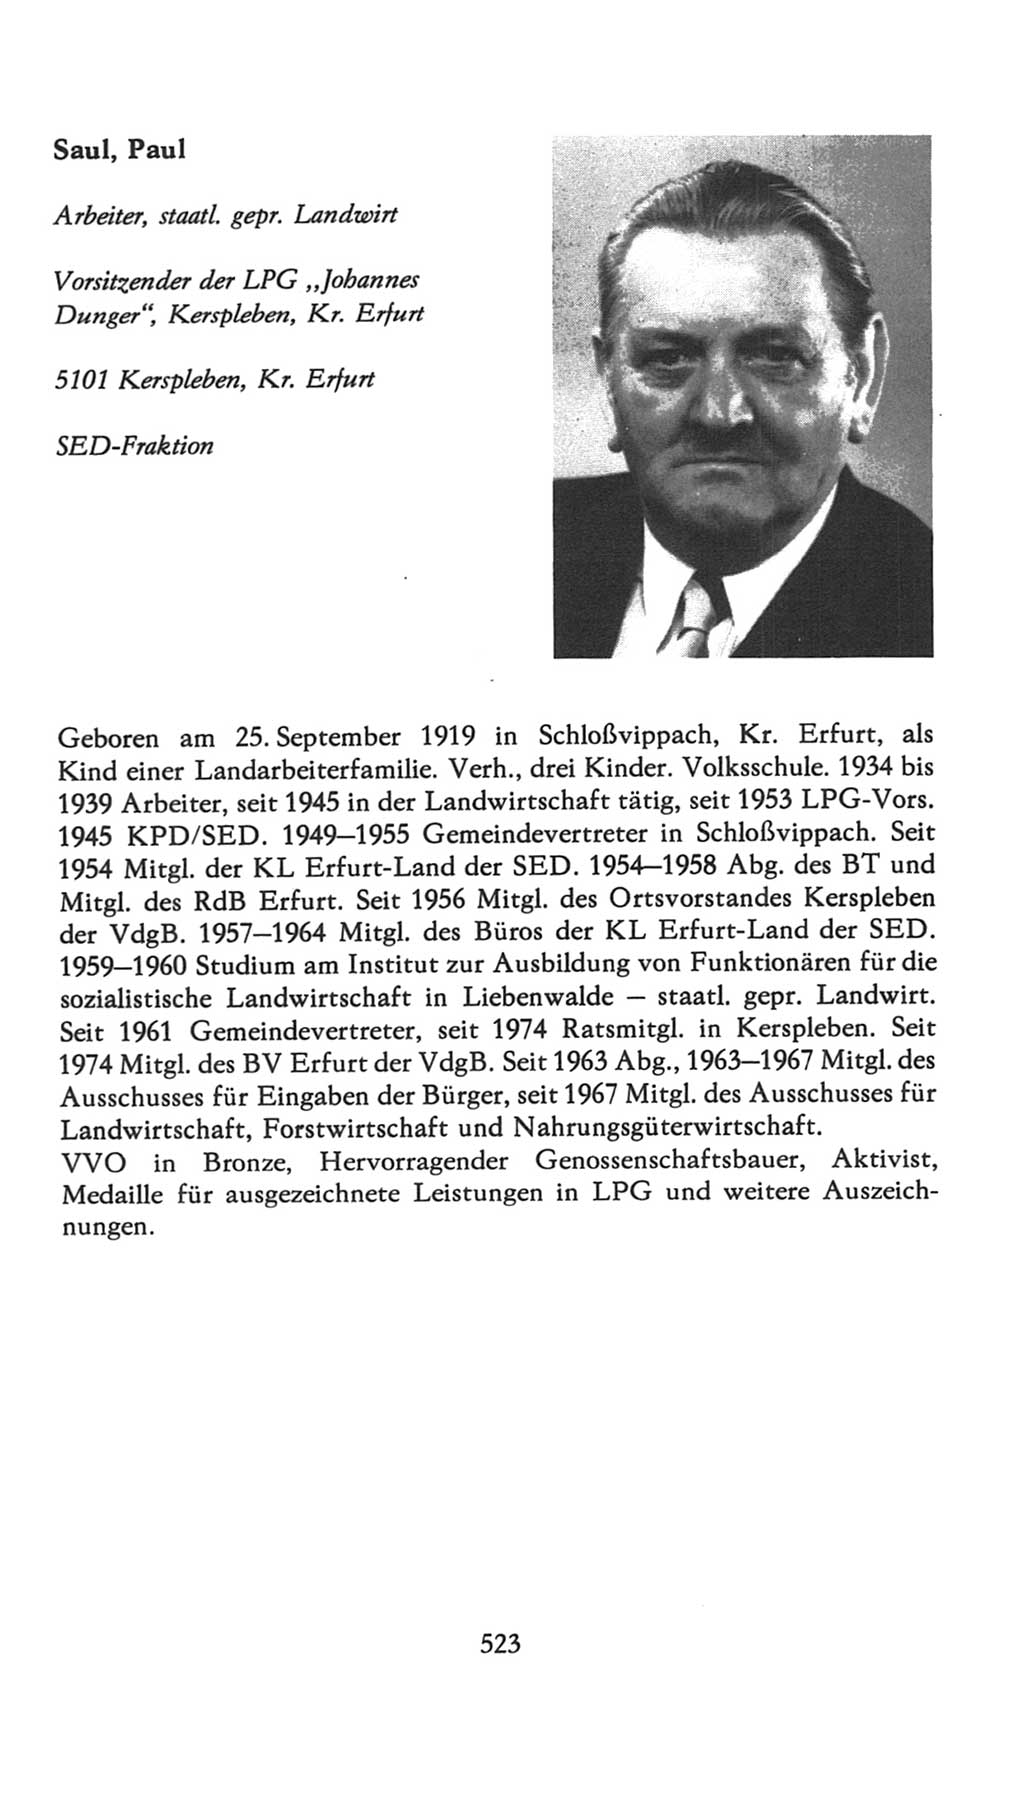 Volkskammer (VK) der Deutschen Demokratischen Republik (DDR), 7. Wahlperiode 1976-1981, Seite 523 (VK. DDR 7. WP. 1976-1981, S. 523)